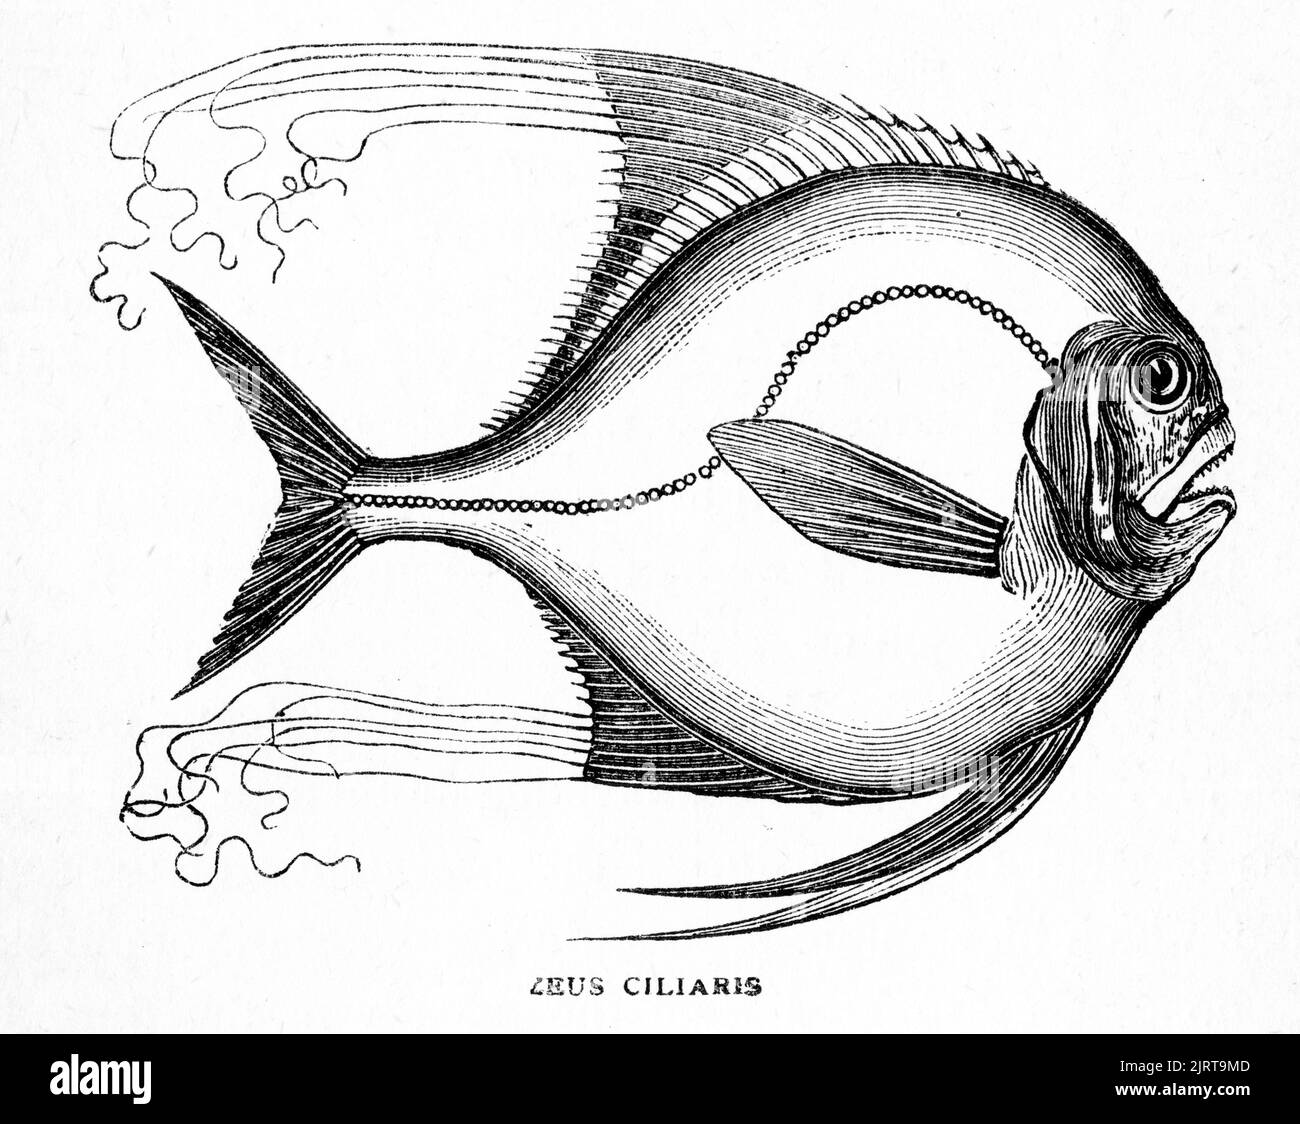 El grabado del pompano africano (Alectis ciliaris), también conocido como el pennant-fish, es una especie ampliamente distribuida de peces marinos tropicales de la familia de los carangidae. Foto de stock